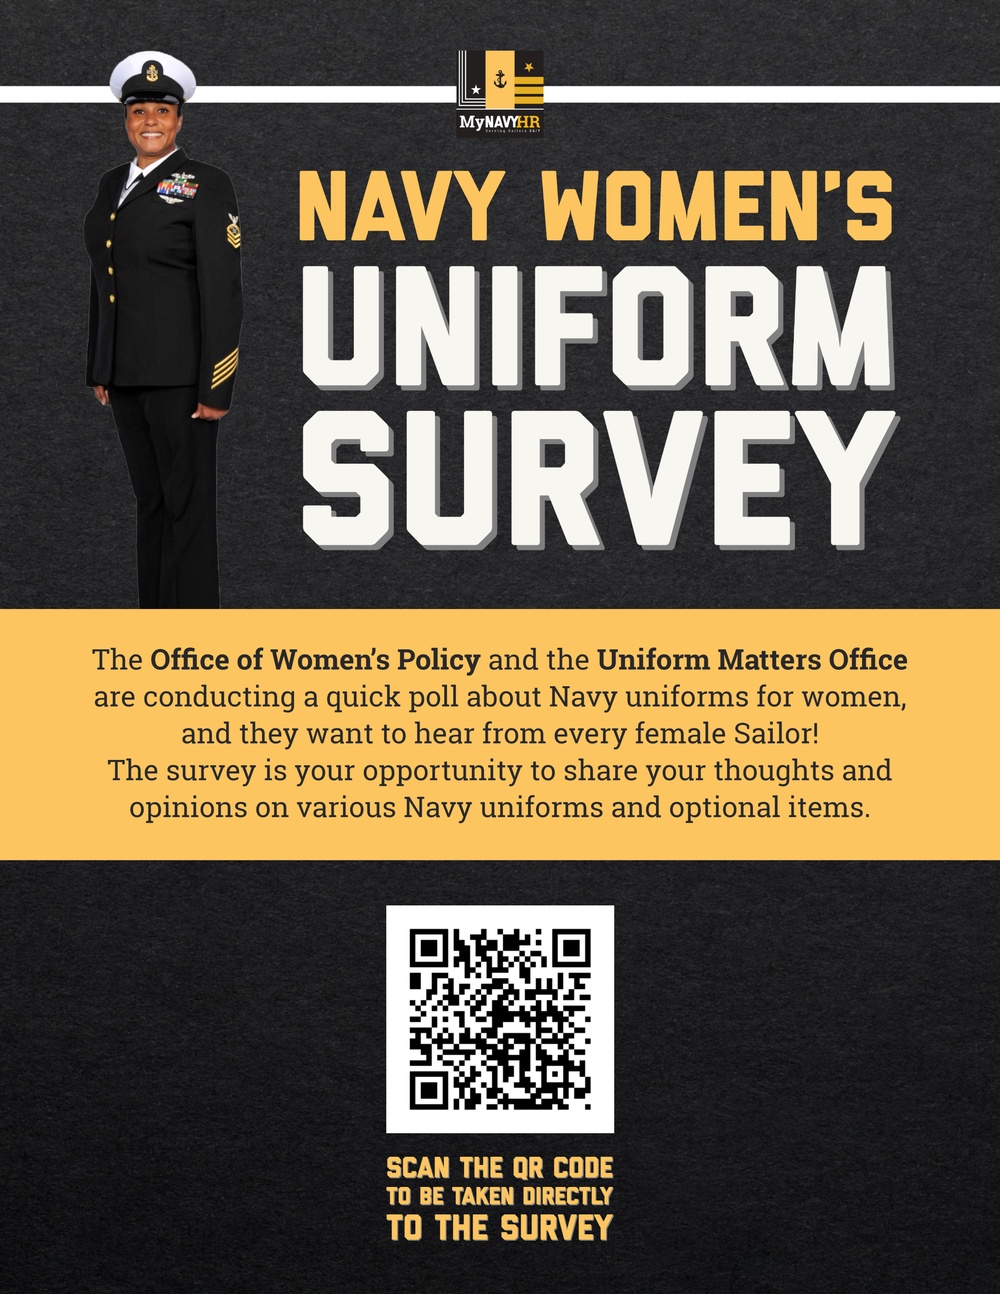 Woman's Uniform Survey Poster